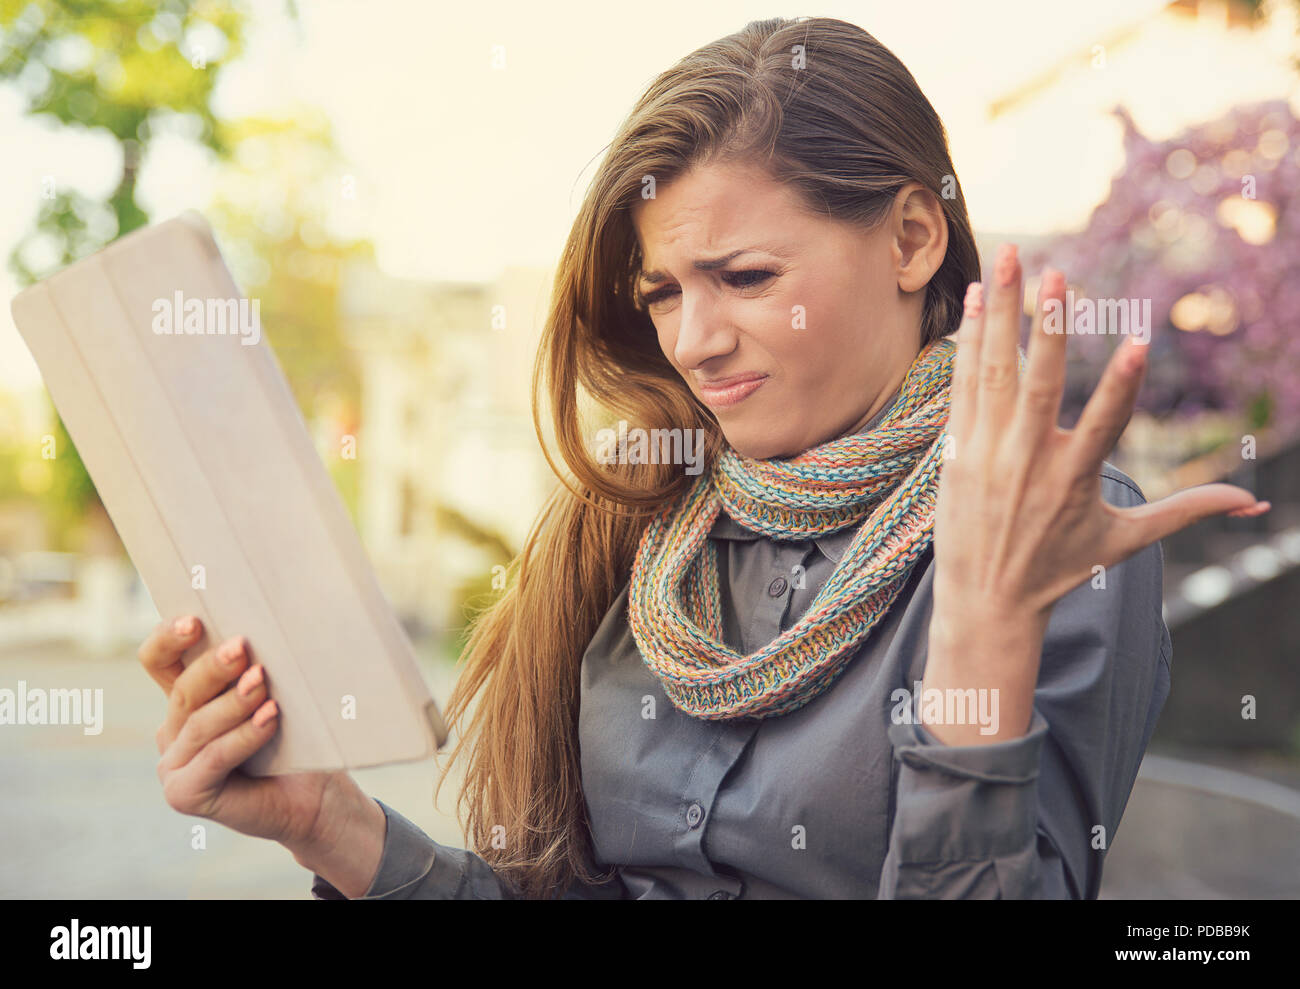 Junge Frau schaut frustriert und mürrisch, unzufrieden mit Tablet-Funktion in schlechte Verbindung auf der Straße Stockfoto